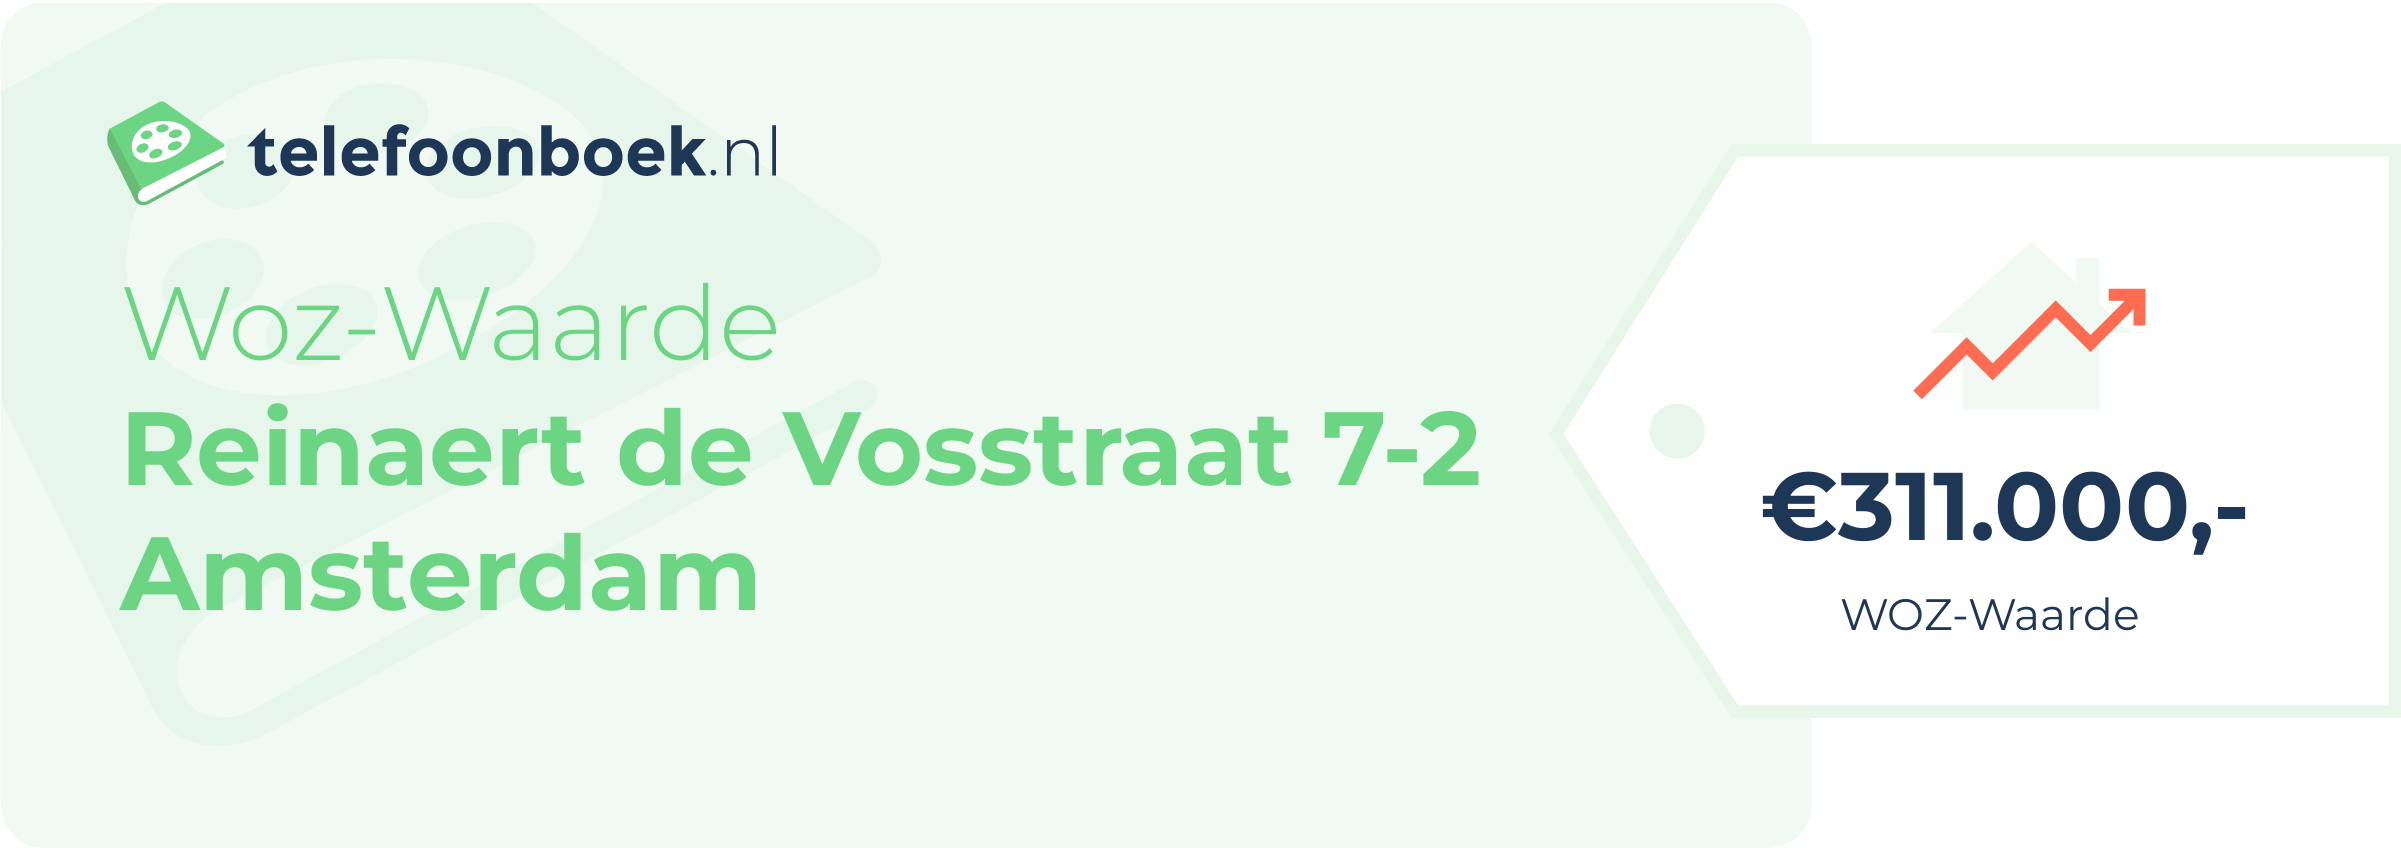 WOZ-waarde Reinaert De Vosstraat 7-2 Amsterdam